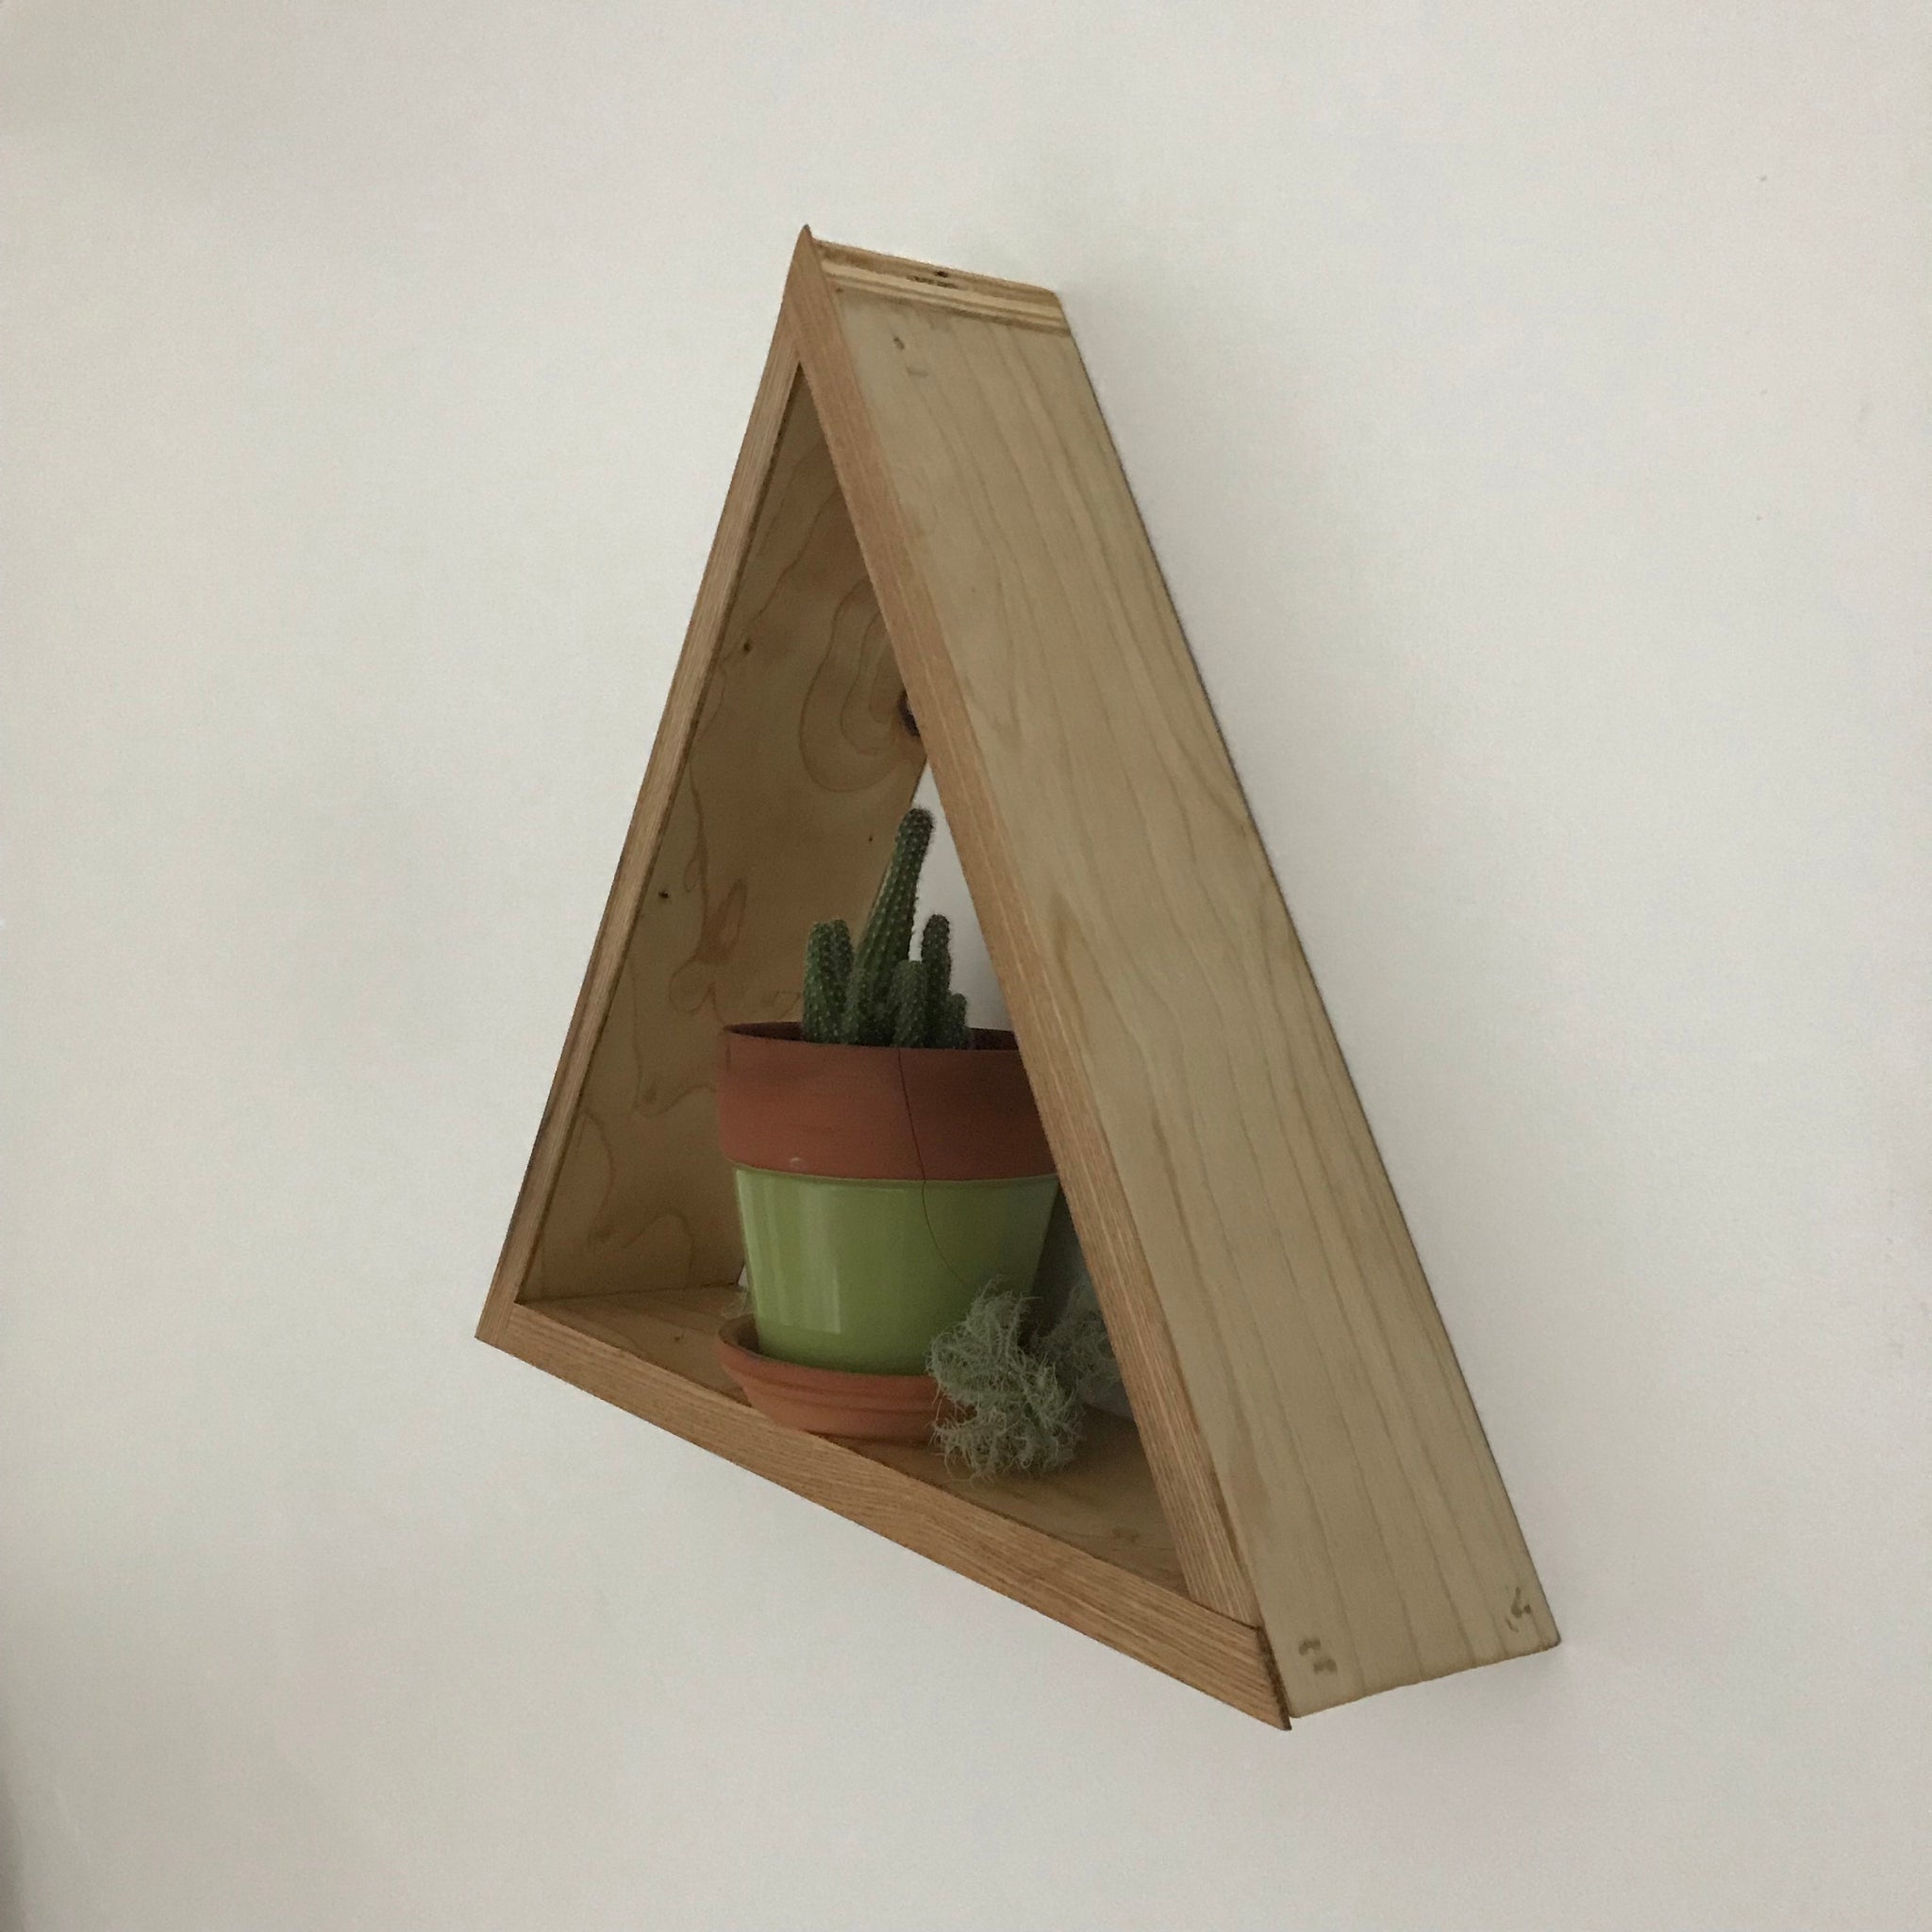 Triangle shadow box shelf